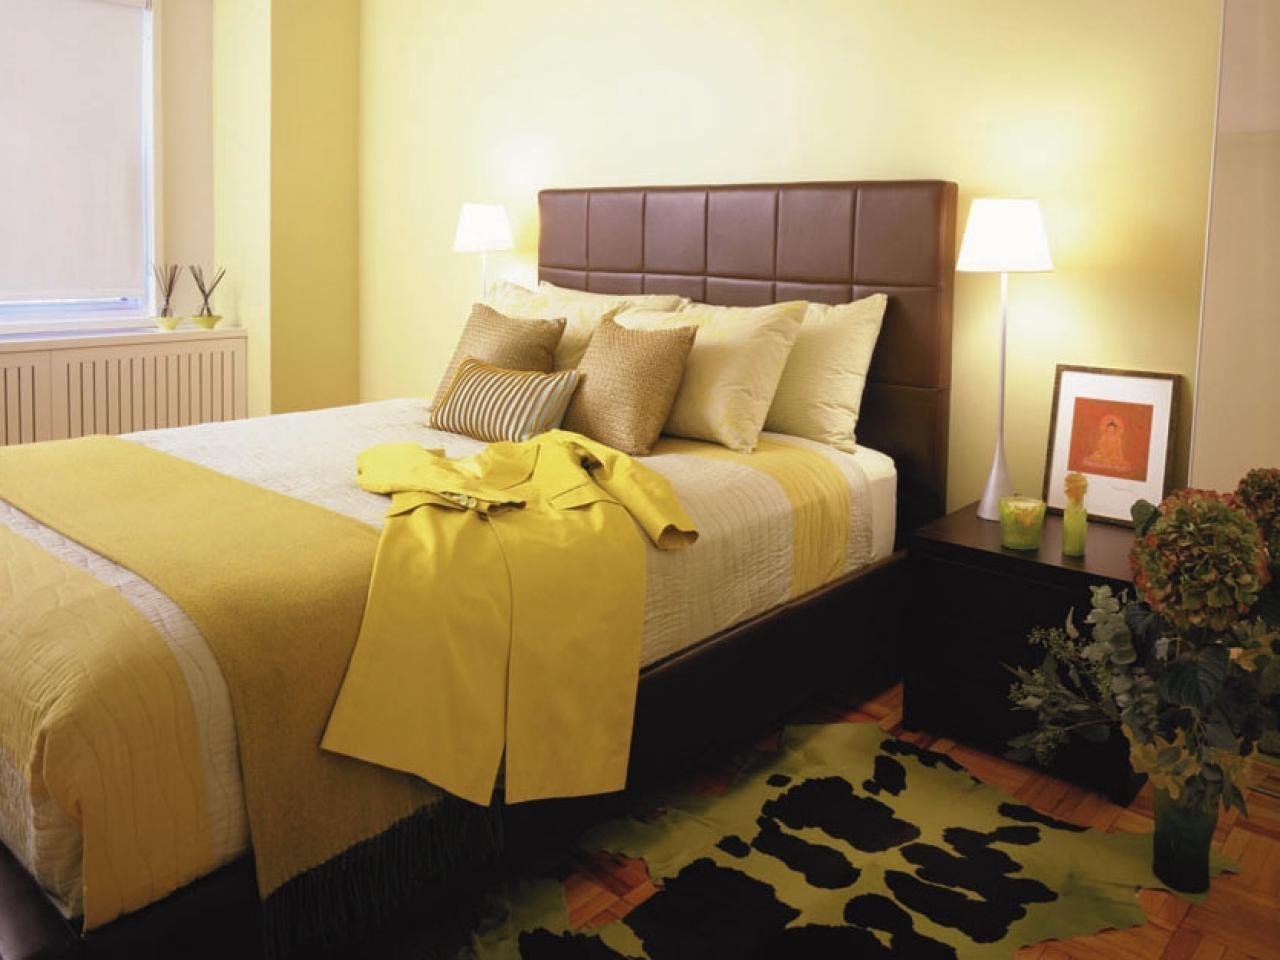 Горчичная кровать. Спальня в желтых тонах. Спальня в горчичном цвете. Спальня в желтом цвете. Желтый цвет в интерьере спальни.